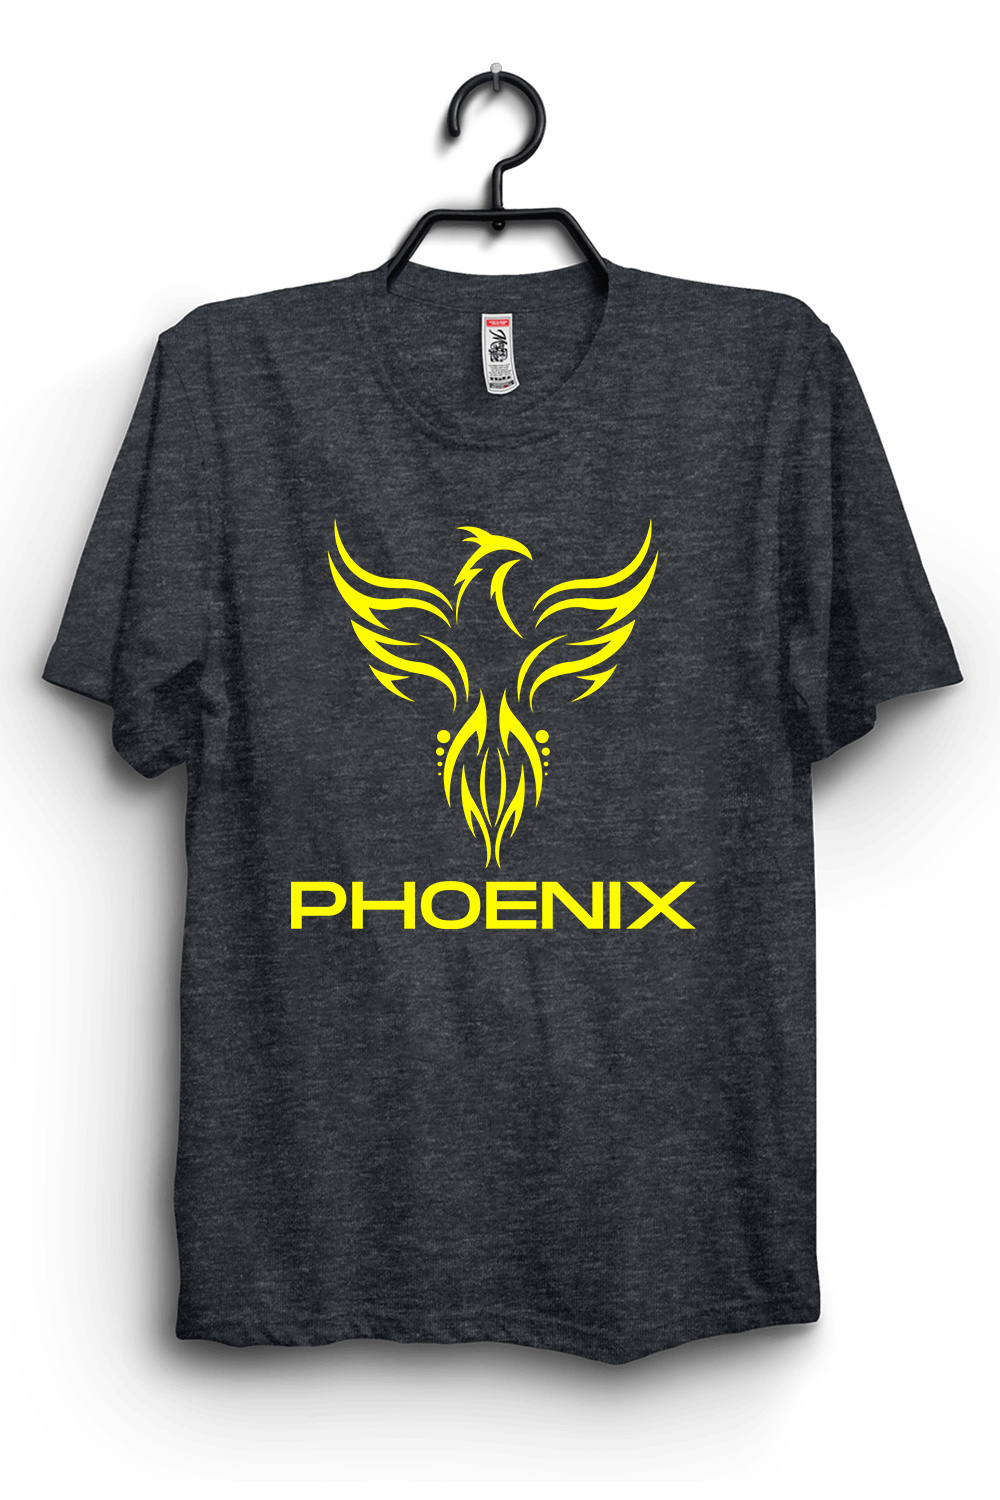 Phoenix eagle t-shirt design pinterest preview image.